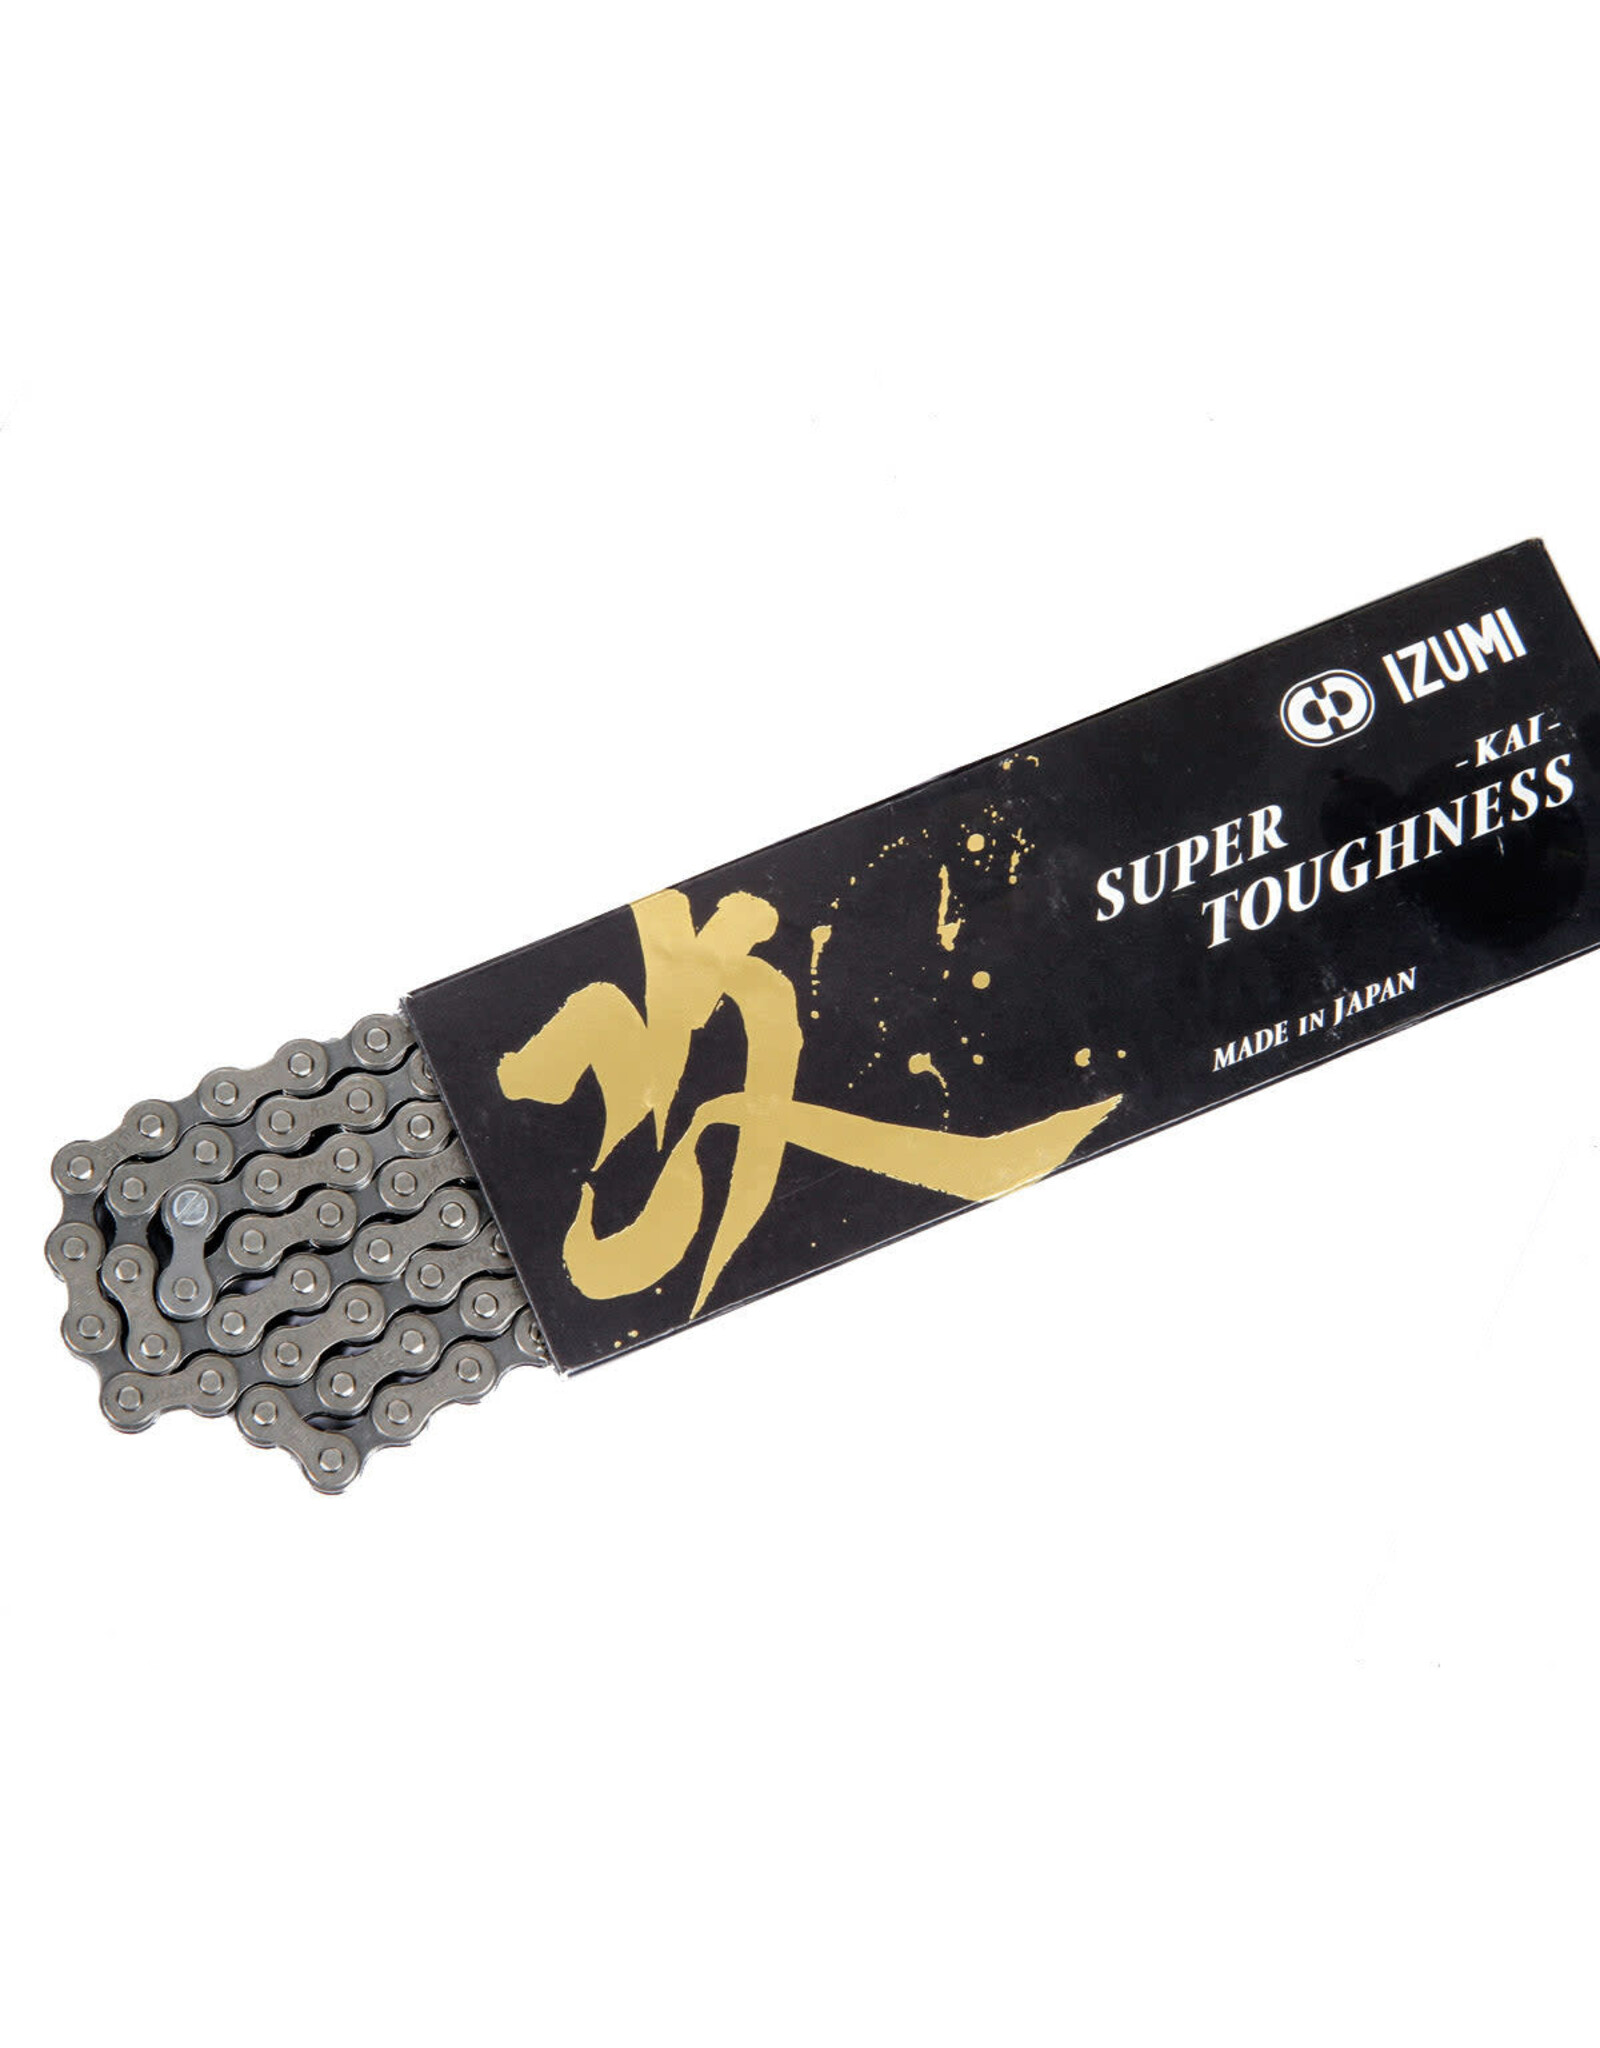 IZUMI Izumi Super Toughness Kai 1/8" Chain Silver